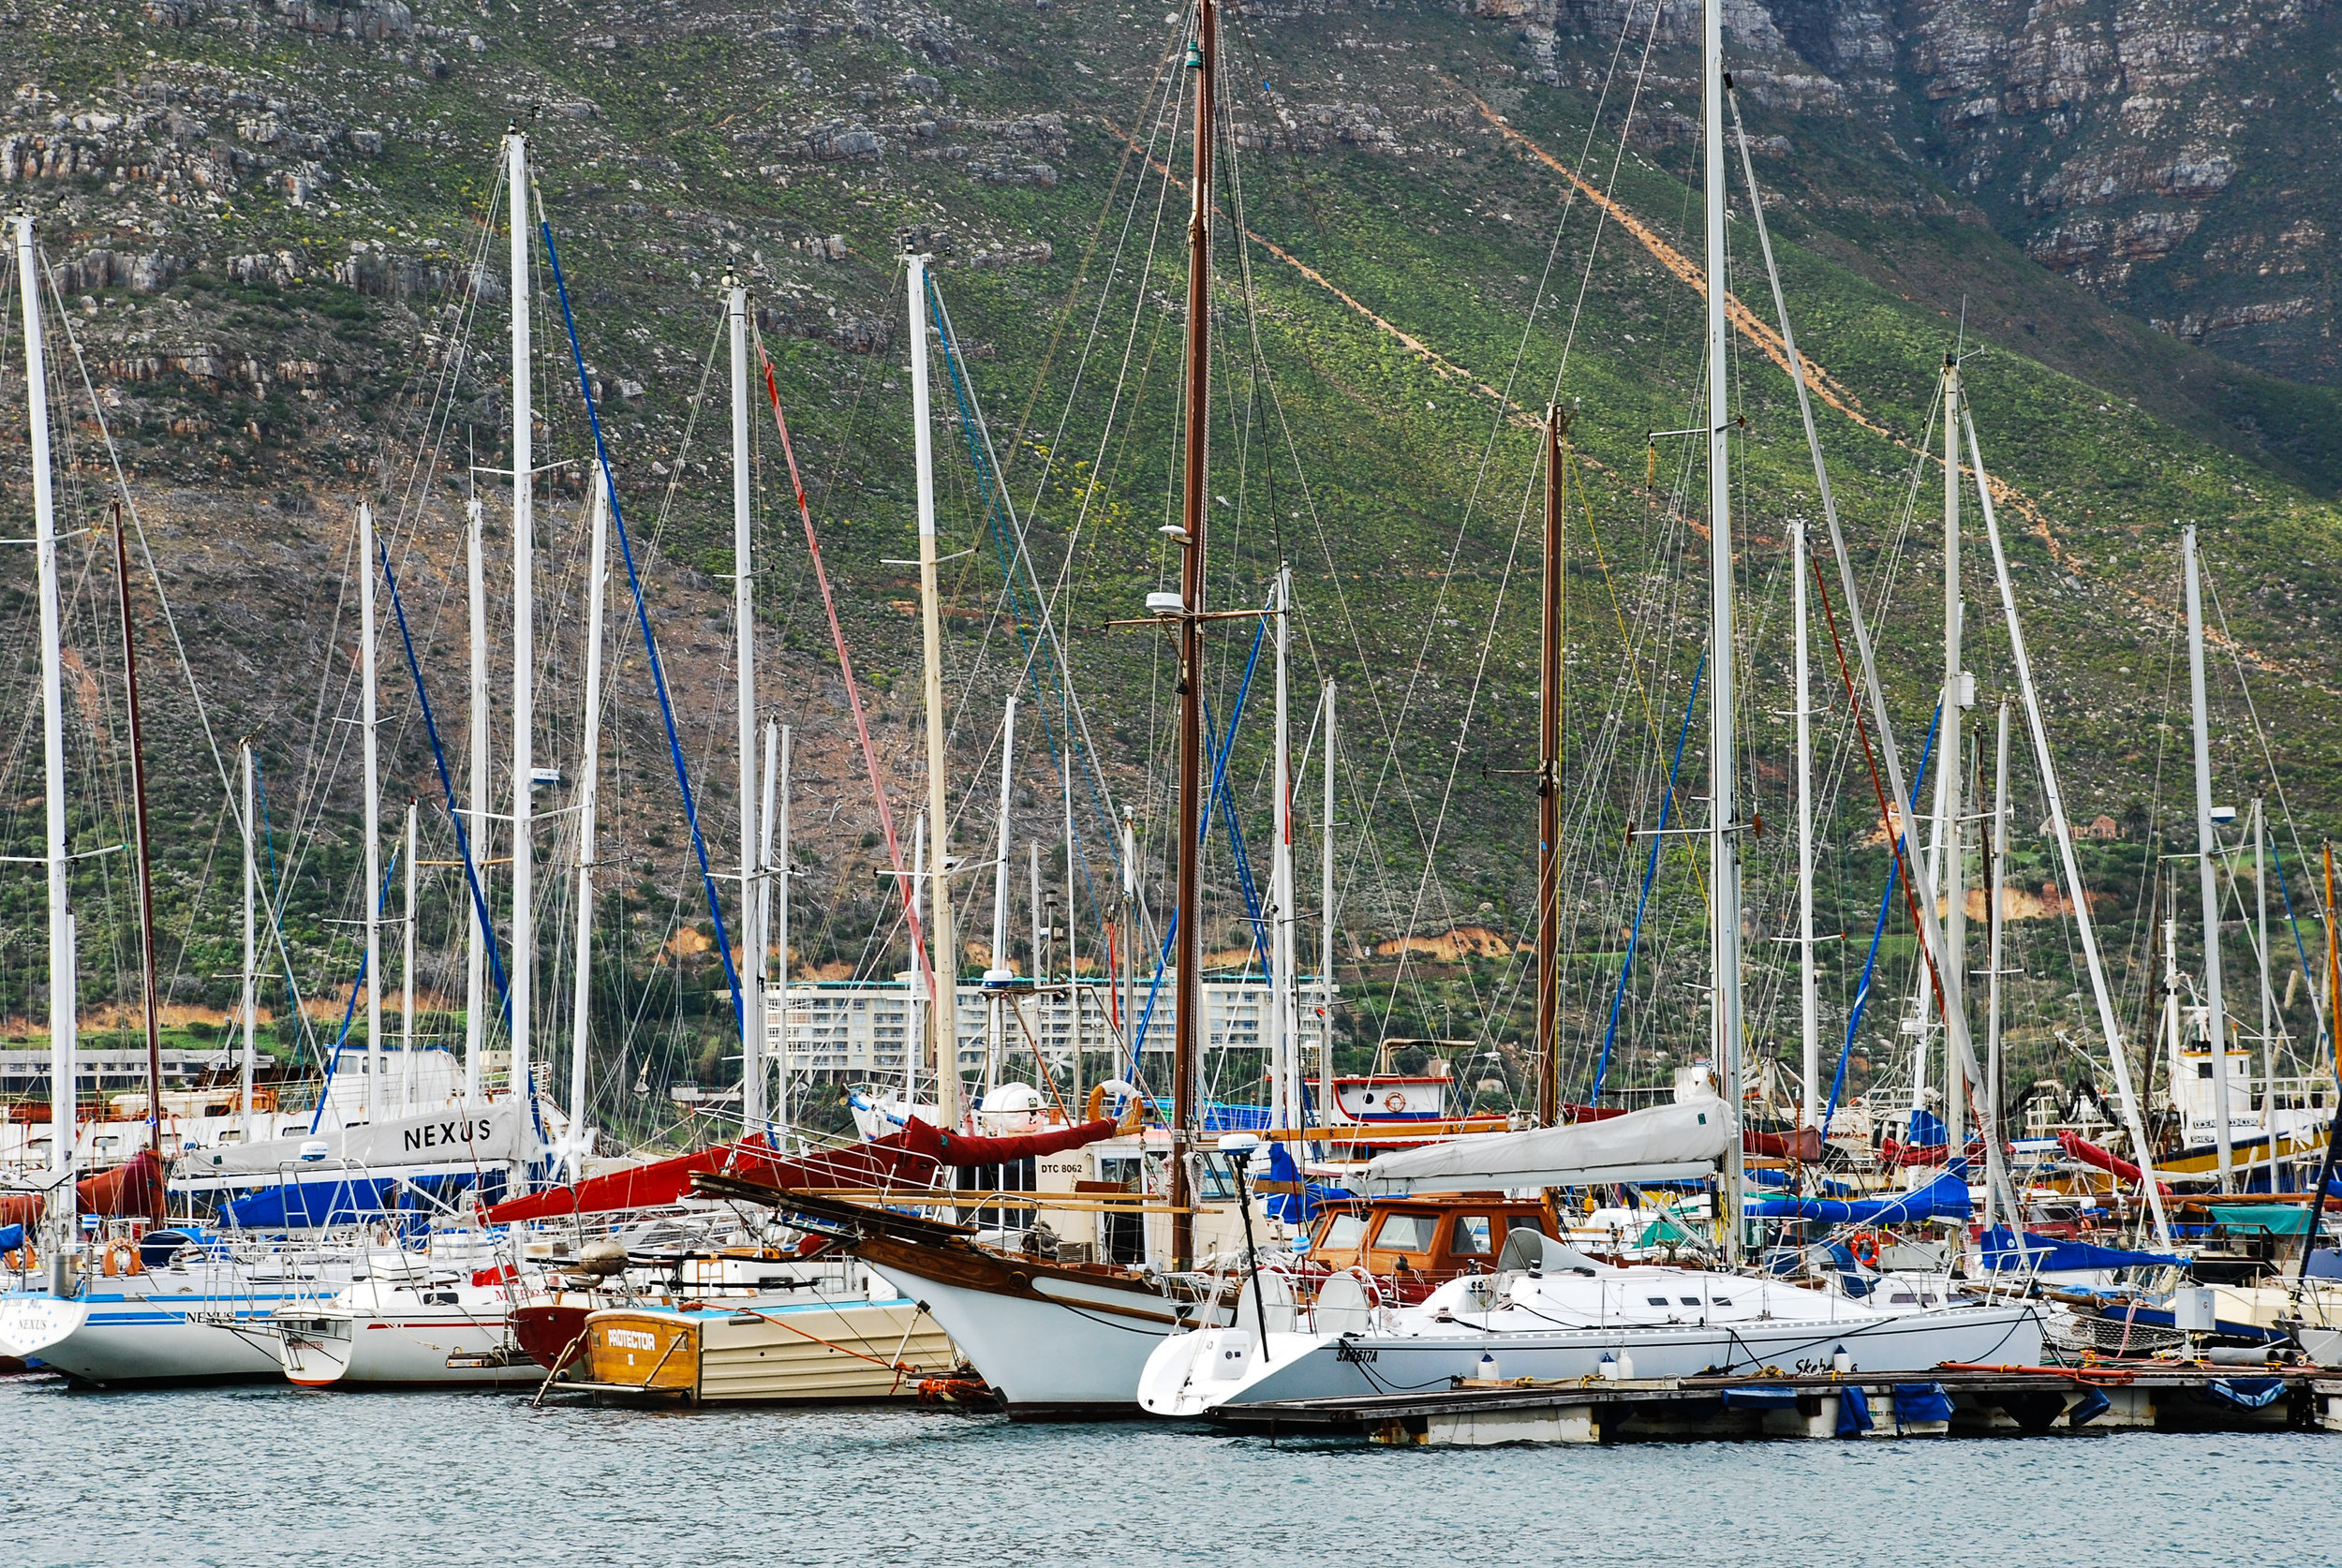   "If I Had a Boat"   Cape Town, S.A. || June 2009 || Nikon D80 